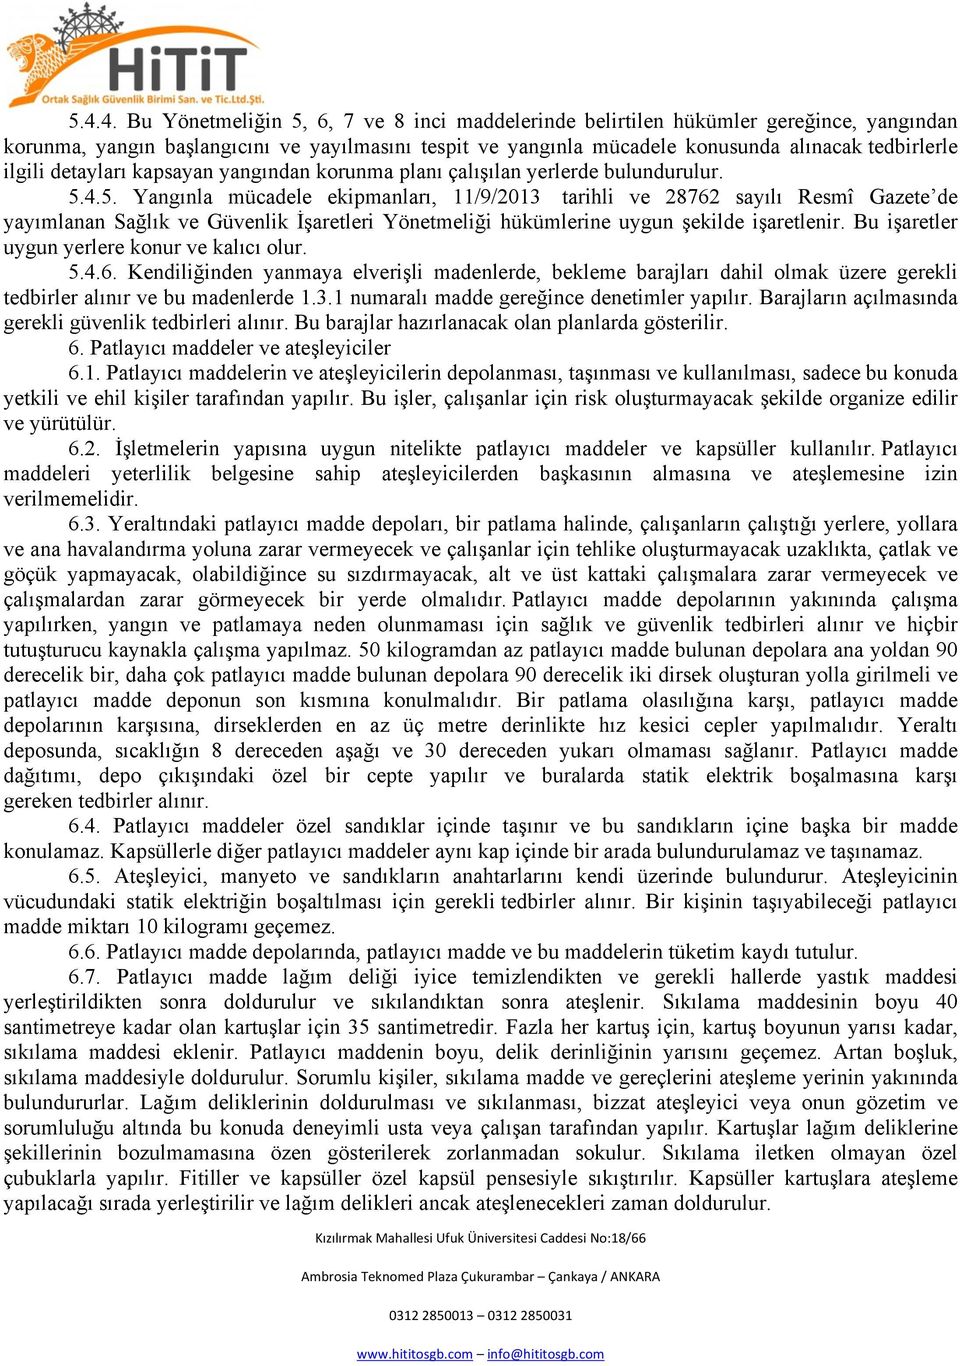 4.5. Yangınla mücadele ekipmanları, 11/9/2013 tarihli ve 28762 sayılı Resmî Gazete de yayımlanan Sağlık ve Güvenlik İşaretleri Yönetmeliği hükümlerine uygun şekilde işaretlenir.